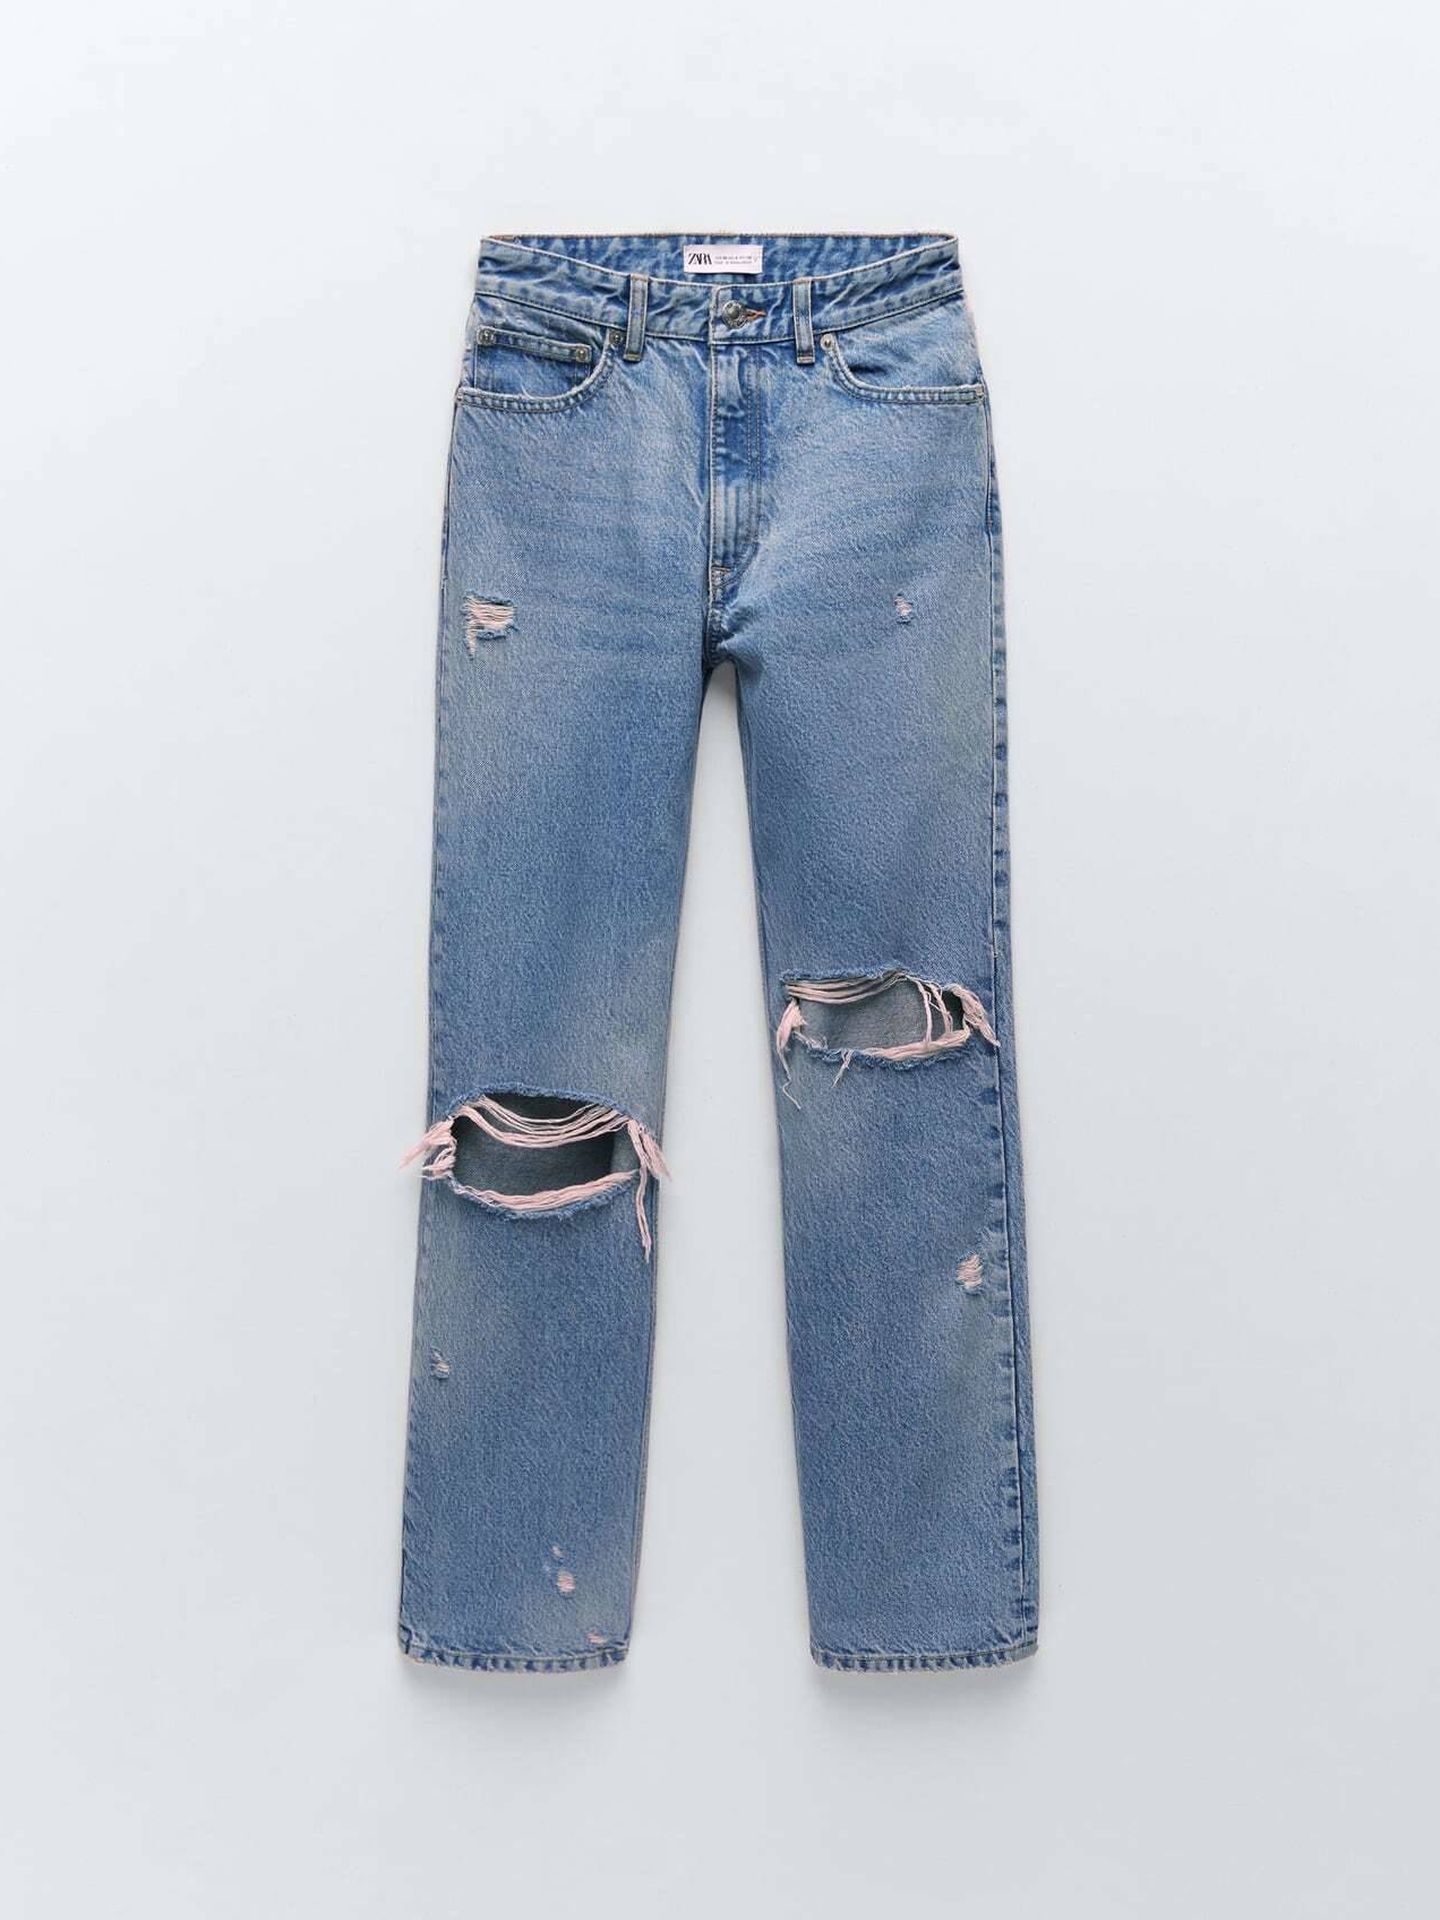 Los jeans de Zara que tiene Amelia Bono. (Cortesía)